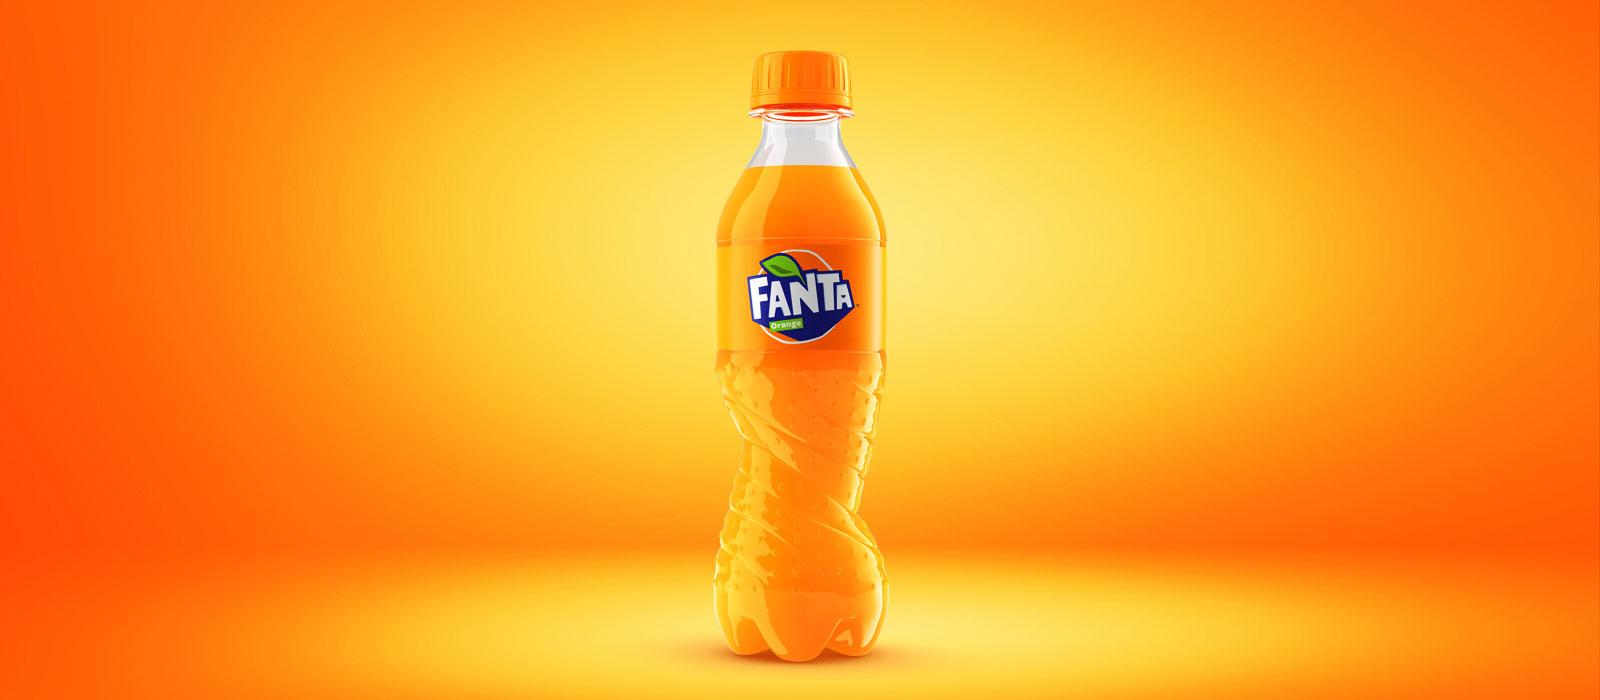 Une bouteille de Fanta avec un fond orange